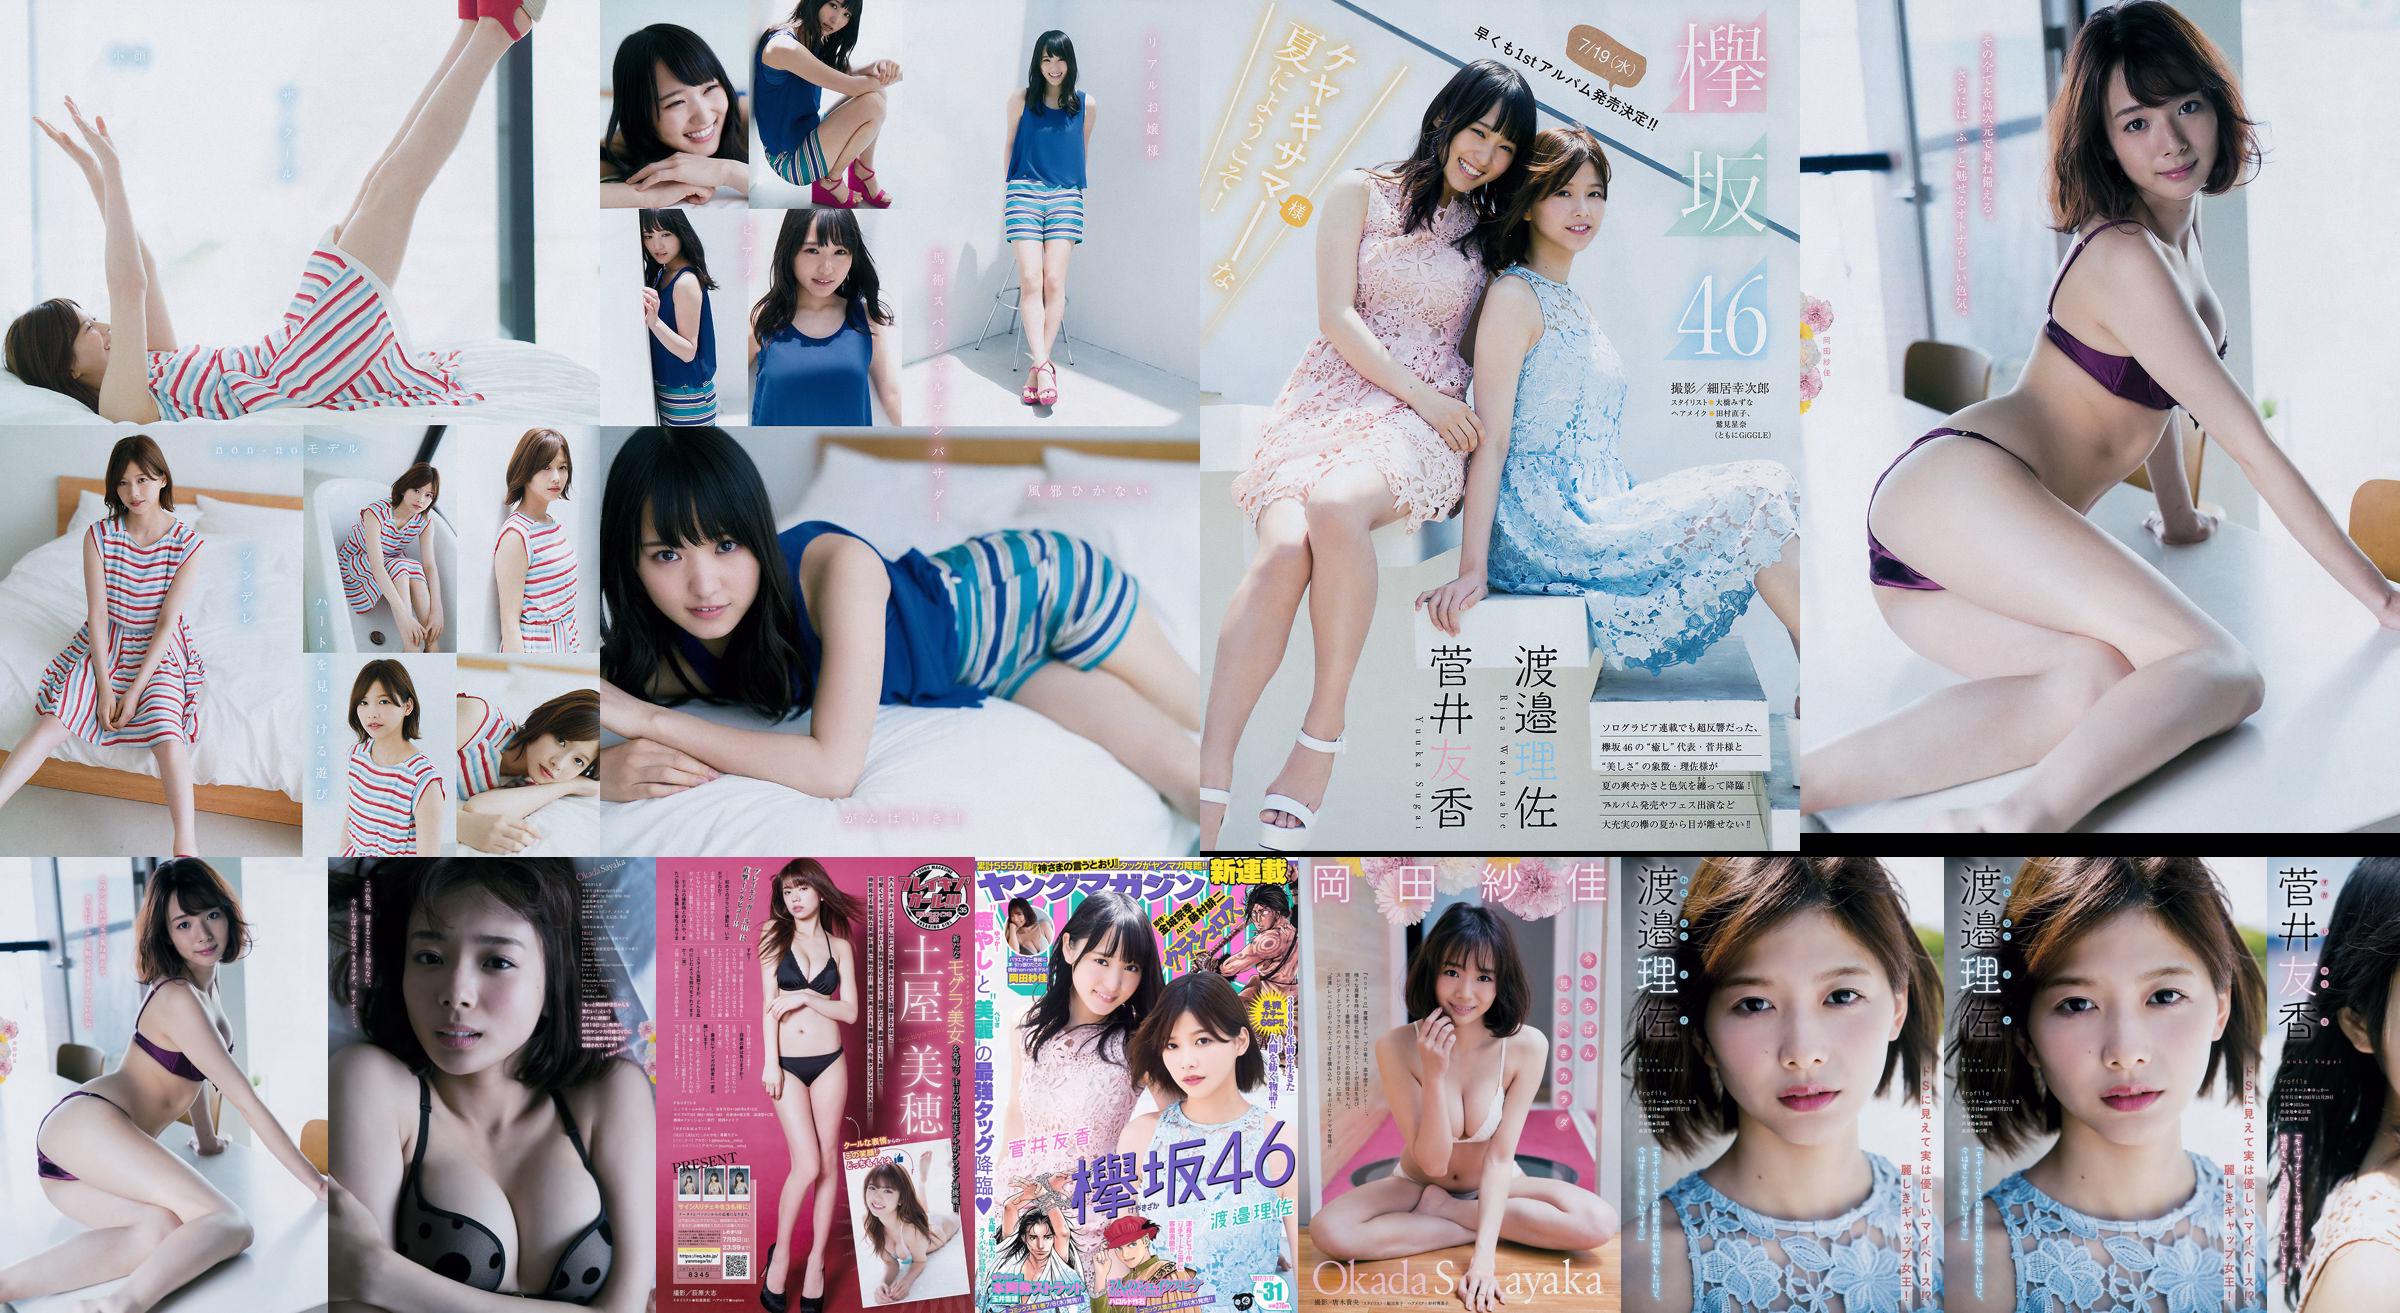 [Young Magazine] Watanabe Risa, Sugai Yuka, Okada Saika 2017 Magazine photo n ° 31 No.8a1df0 Page 1